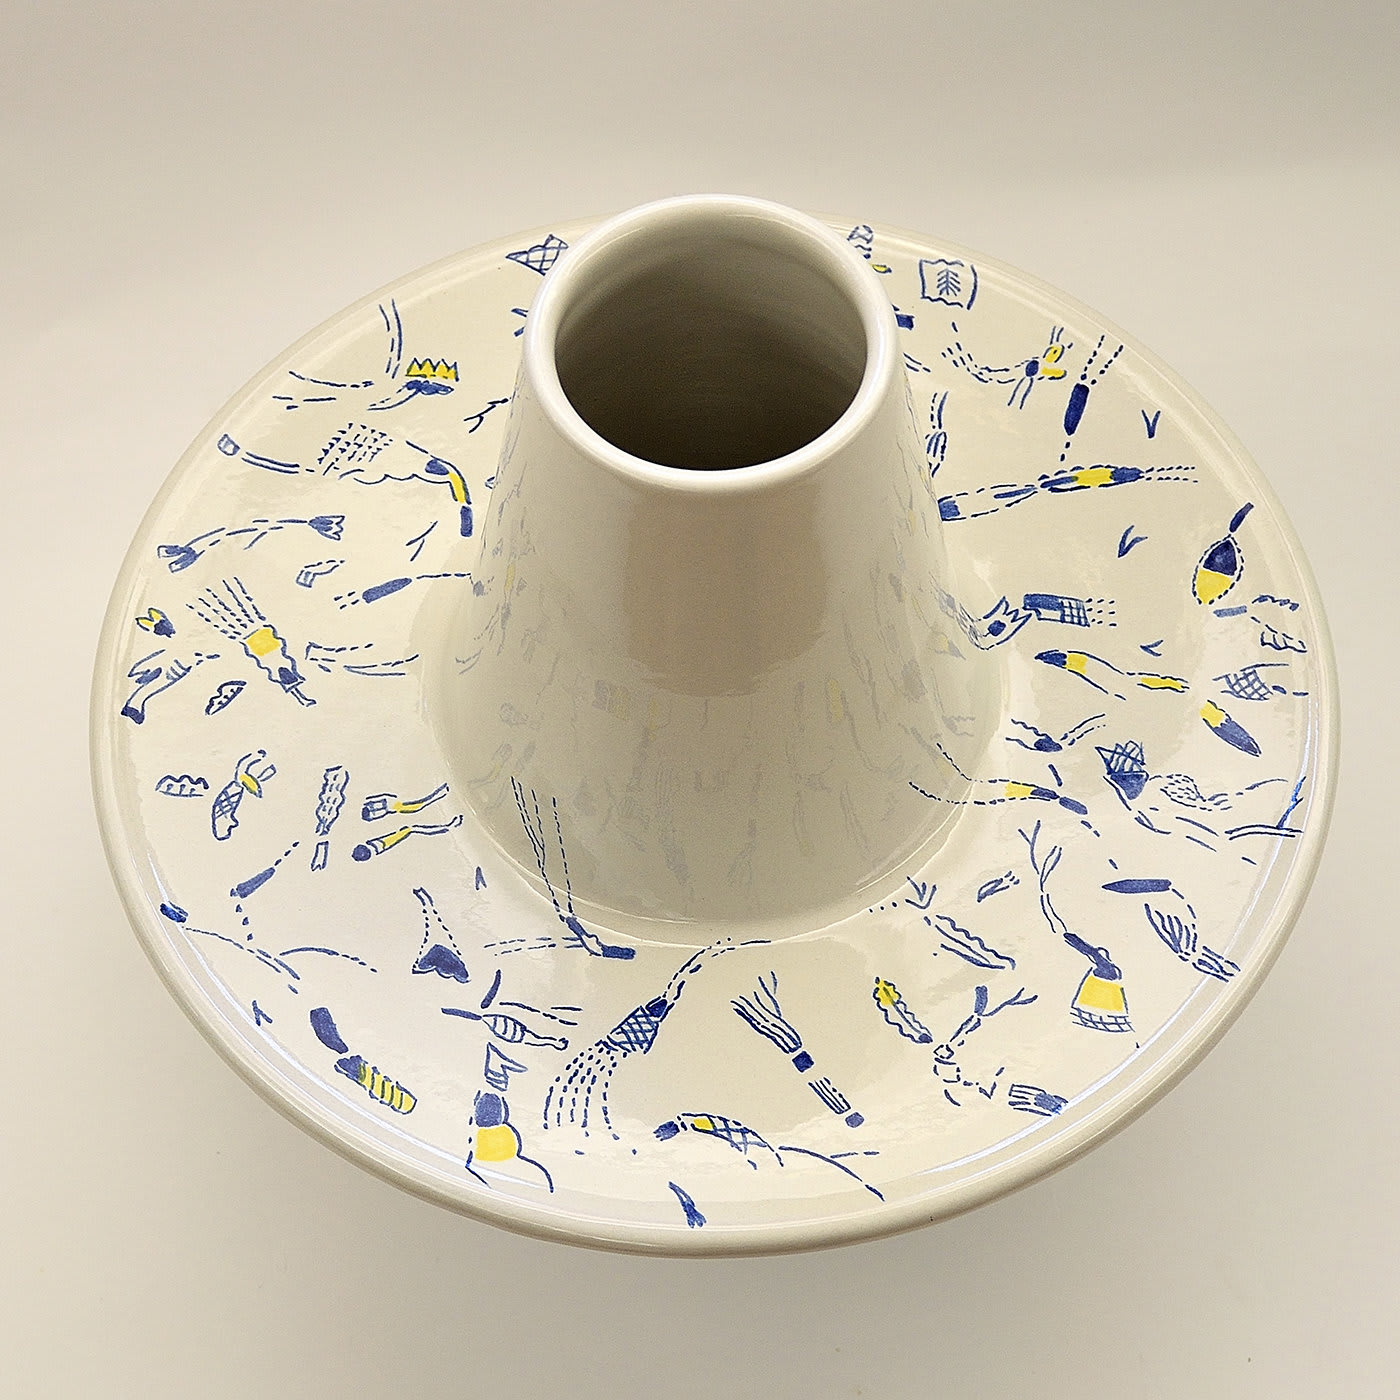 Blue and White Vase by Ugo La Pietra - Ceramica Gatti 1928